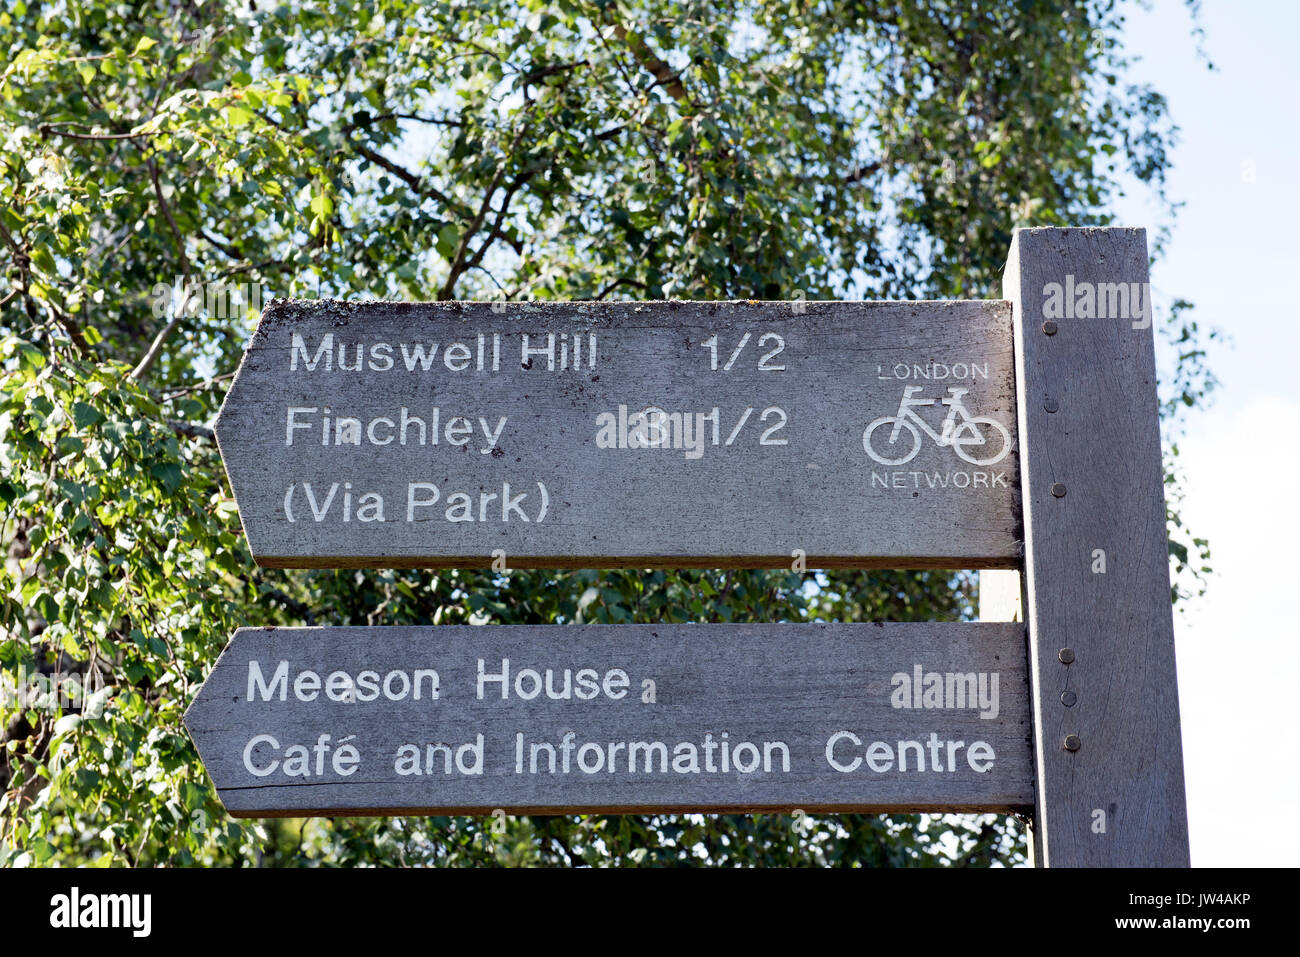 Eine Anfahrtsbeschreibung zum Muswell Hill und Finchley Teil des Londoner Zyklus Netzwerk Fingerpost Stockfoto